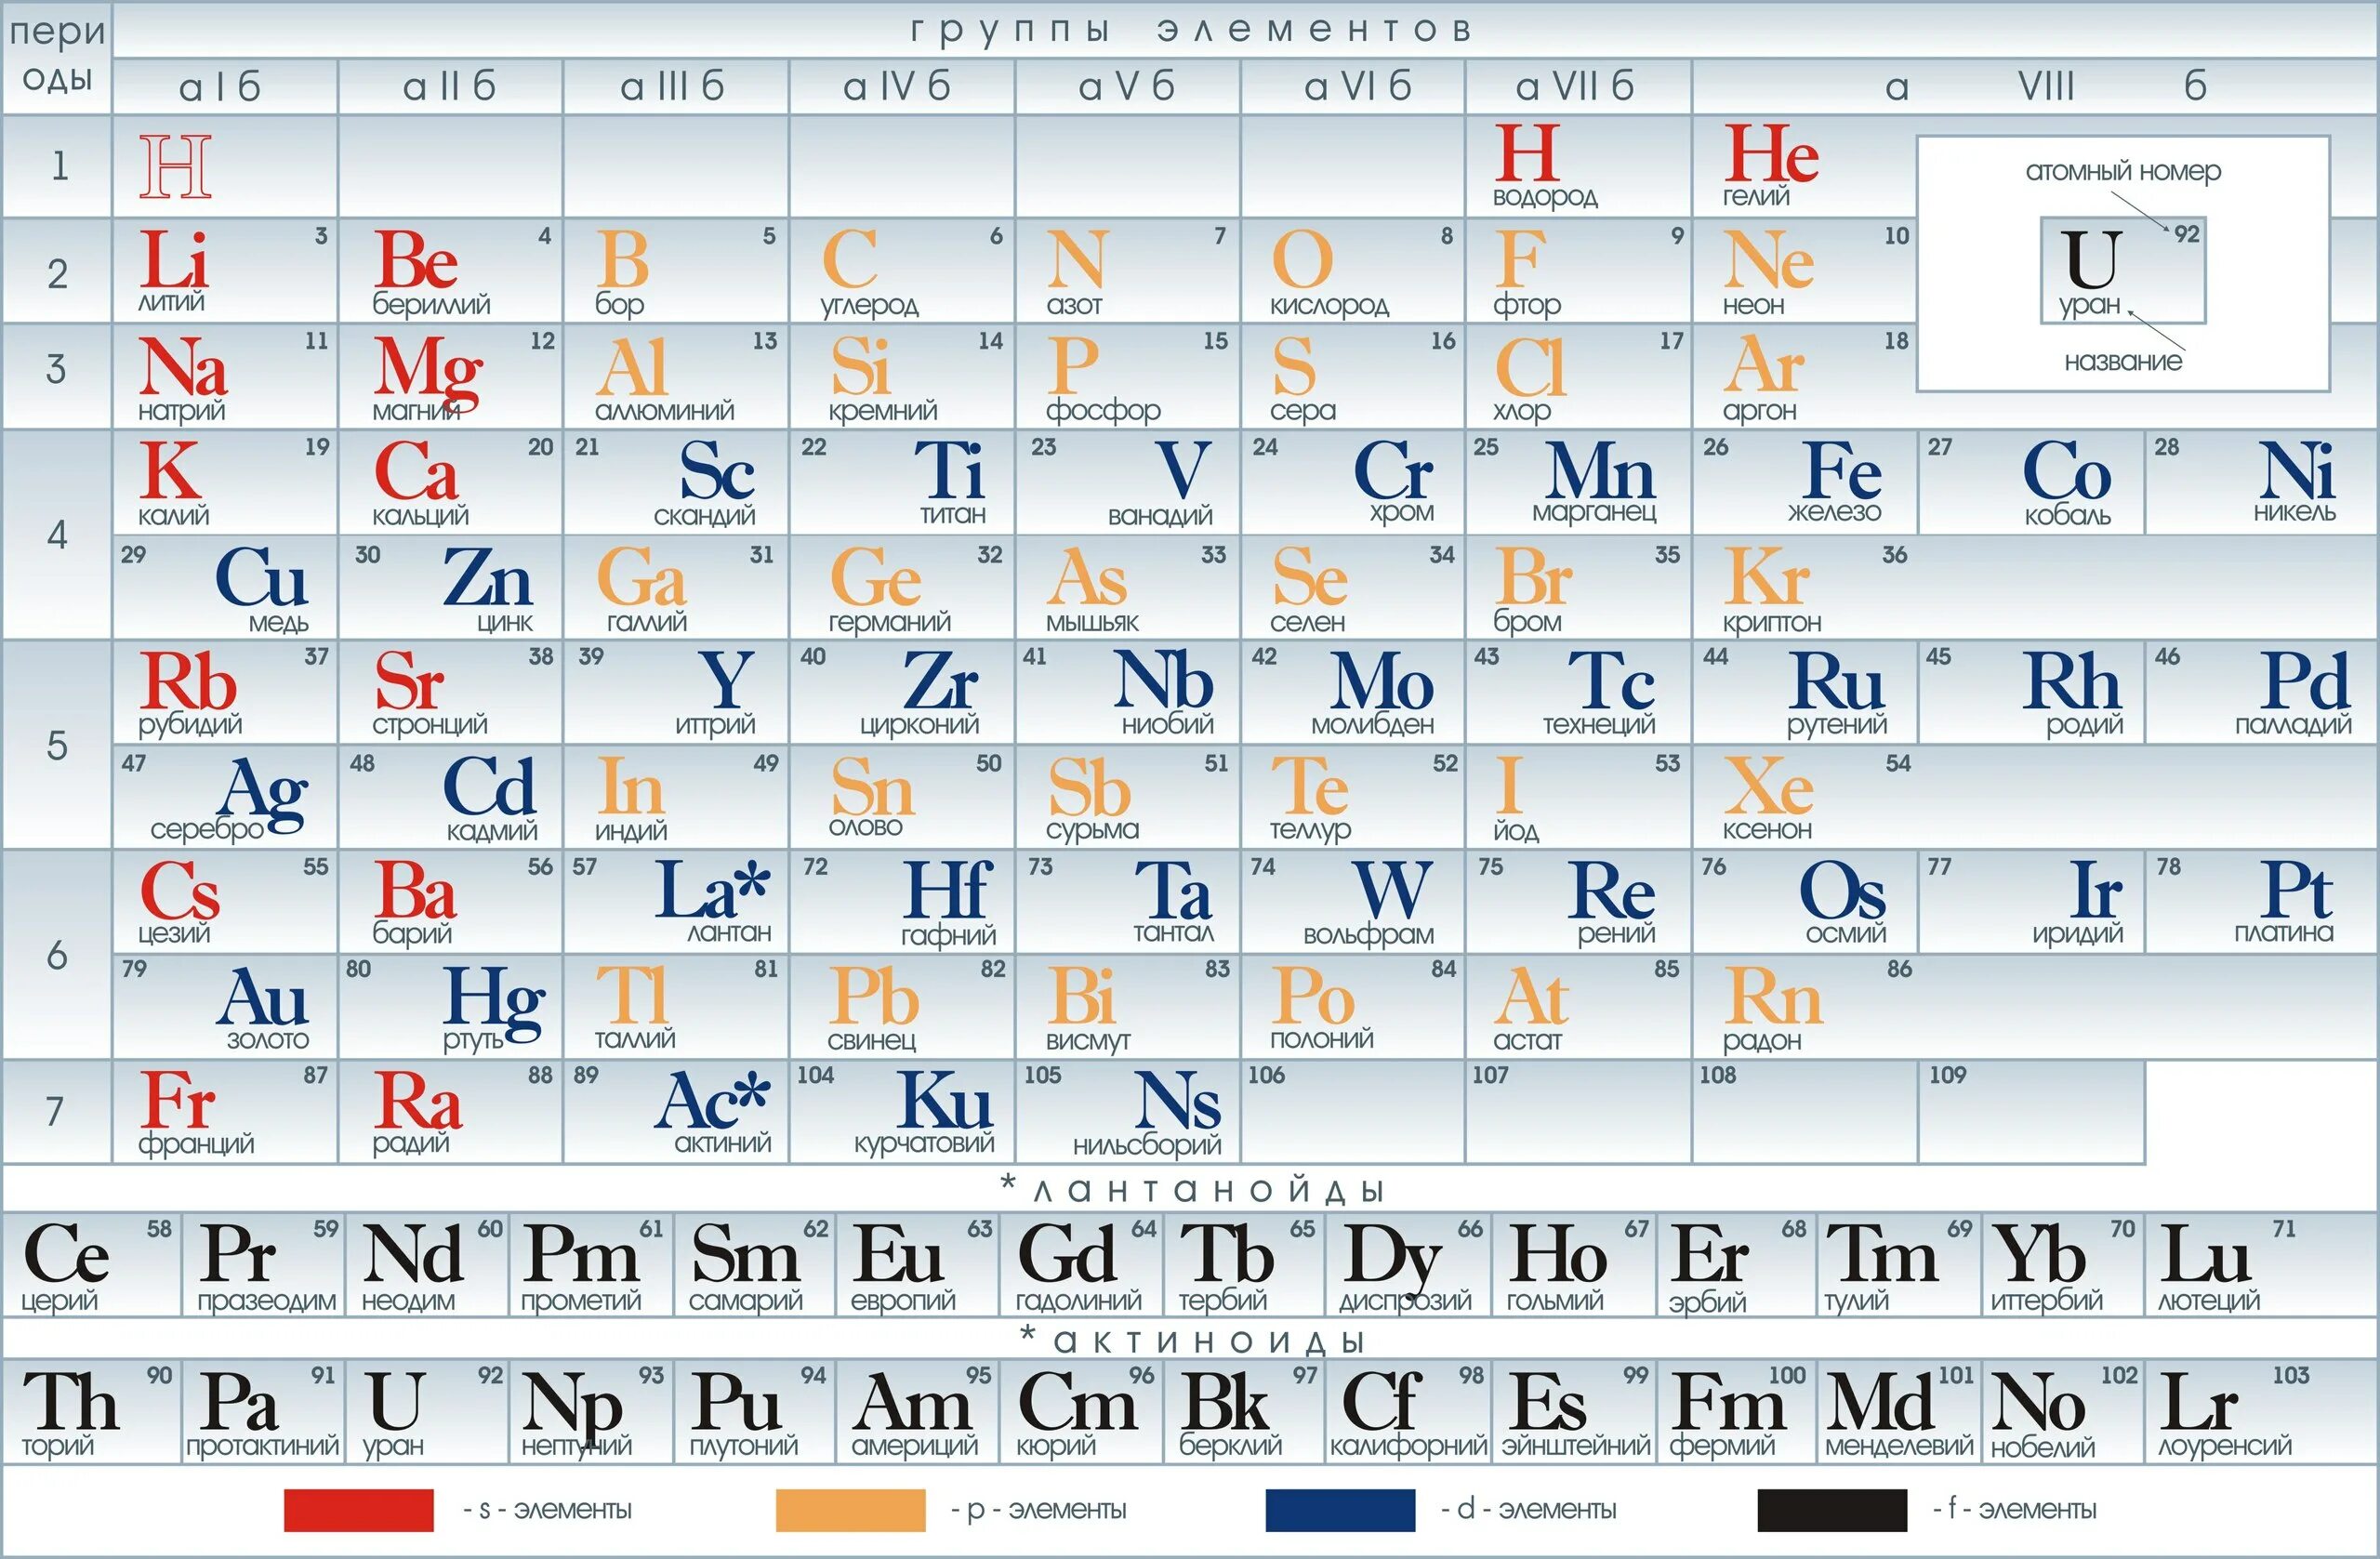 Периодическая система химических элементов таблица. Периодич табл Менделеева. Таб таблица Менделеева. Знаки химических элементов периодическая таблица д.и Менделеева. И т д мин